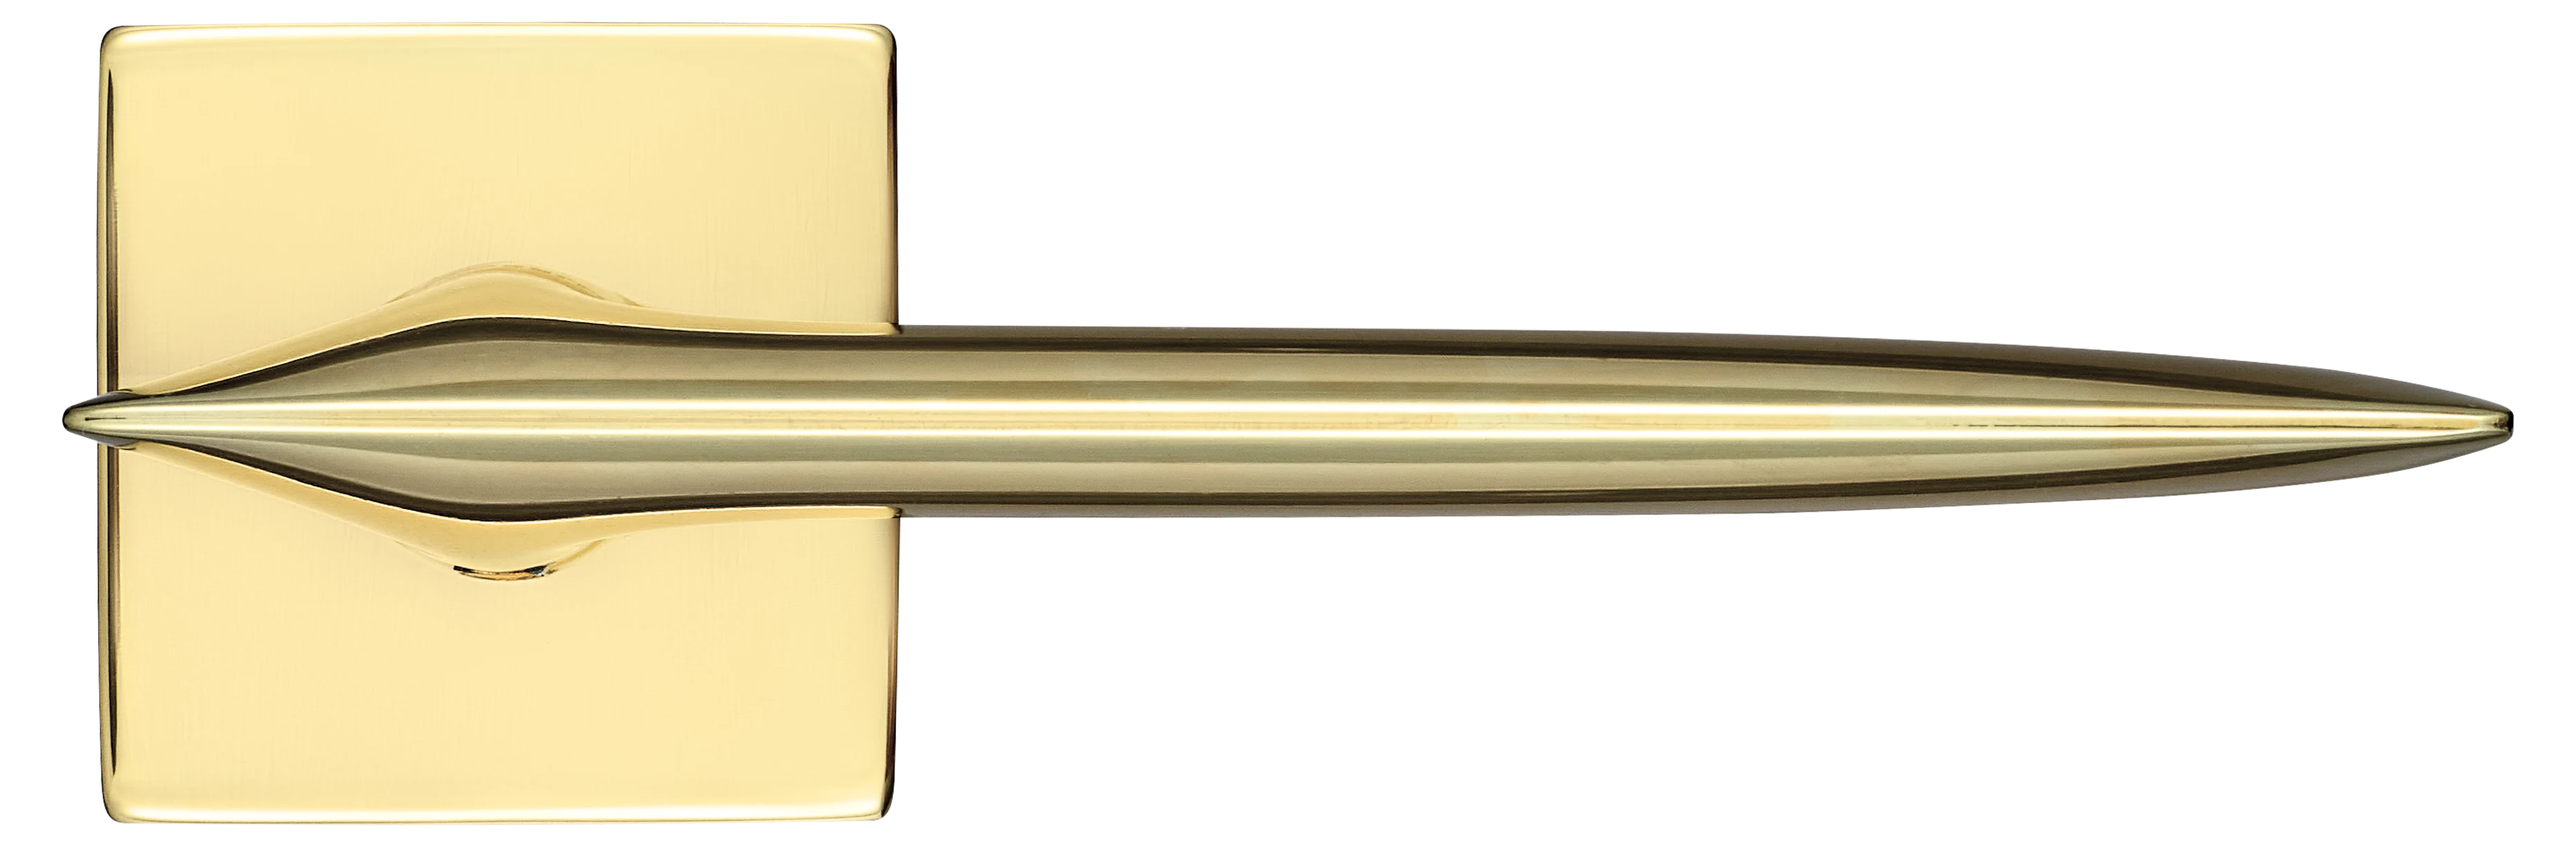 GALACTIC S5 OTL, ручка дверная, цвет -  золото фото купить в Омске